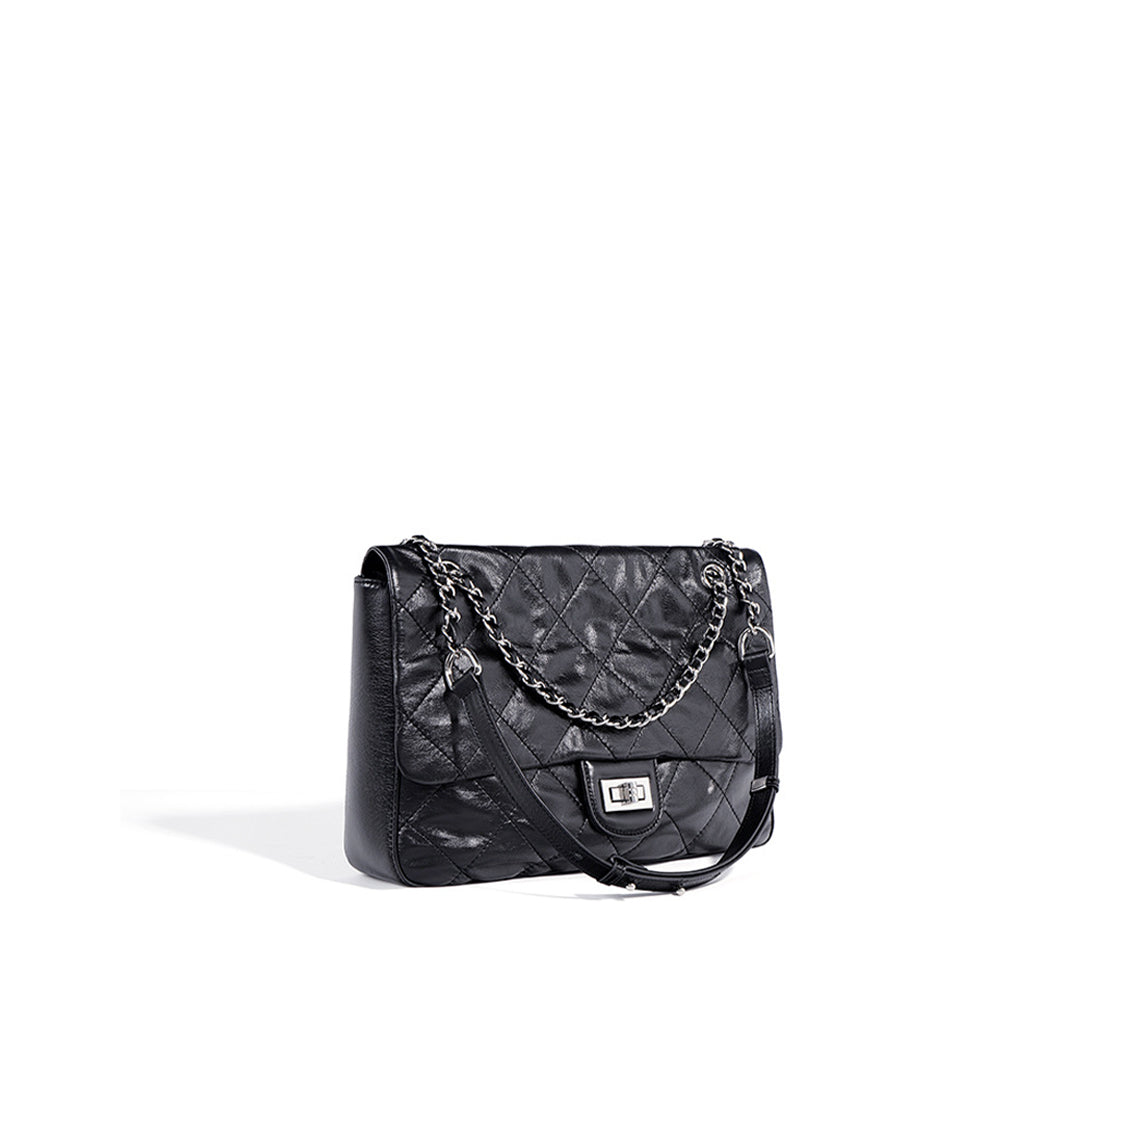 Chain Strap Shoulder Bag | Black Leather Flap Bag for Women - POPSEWING™